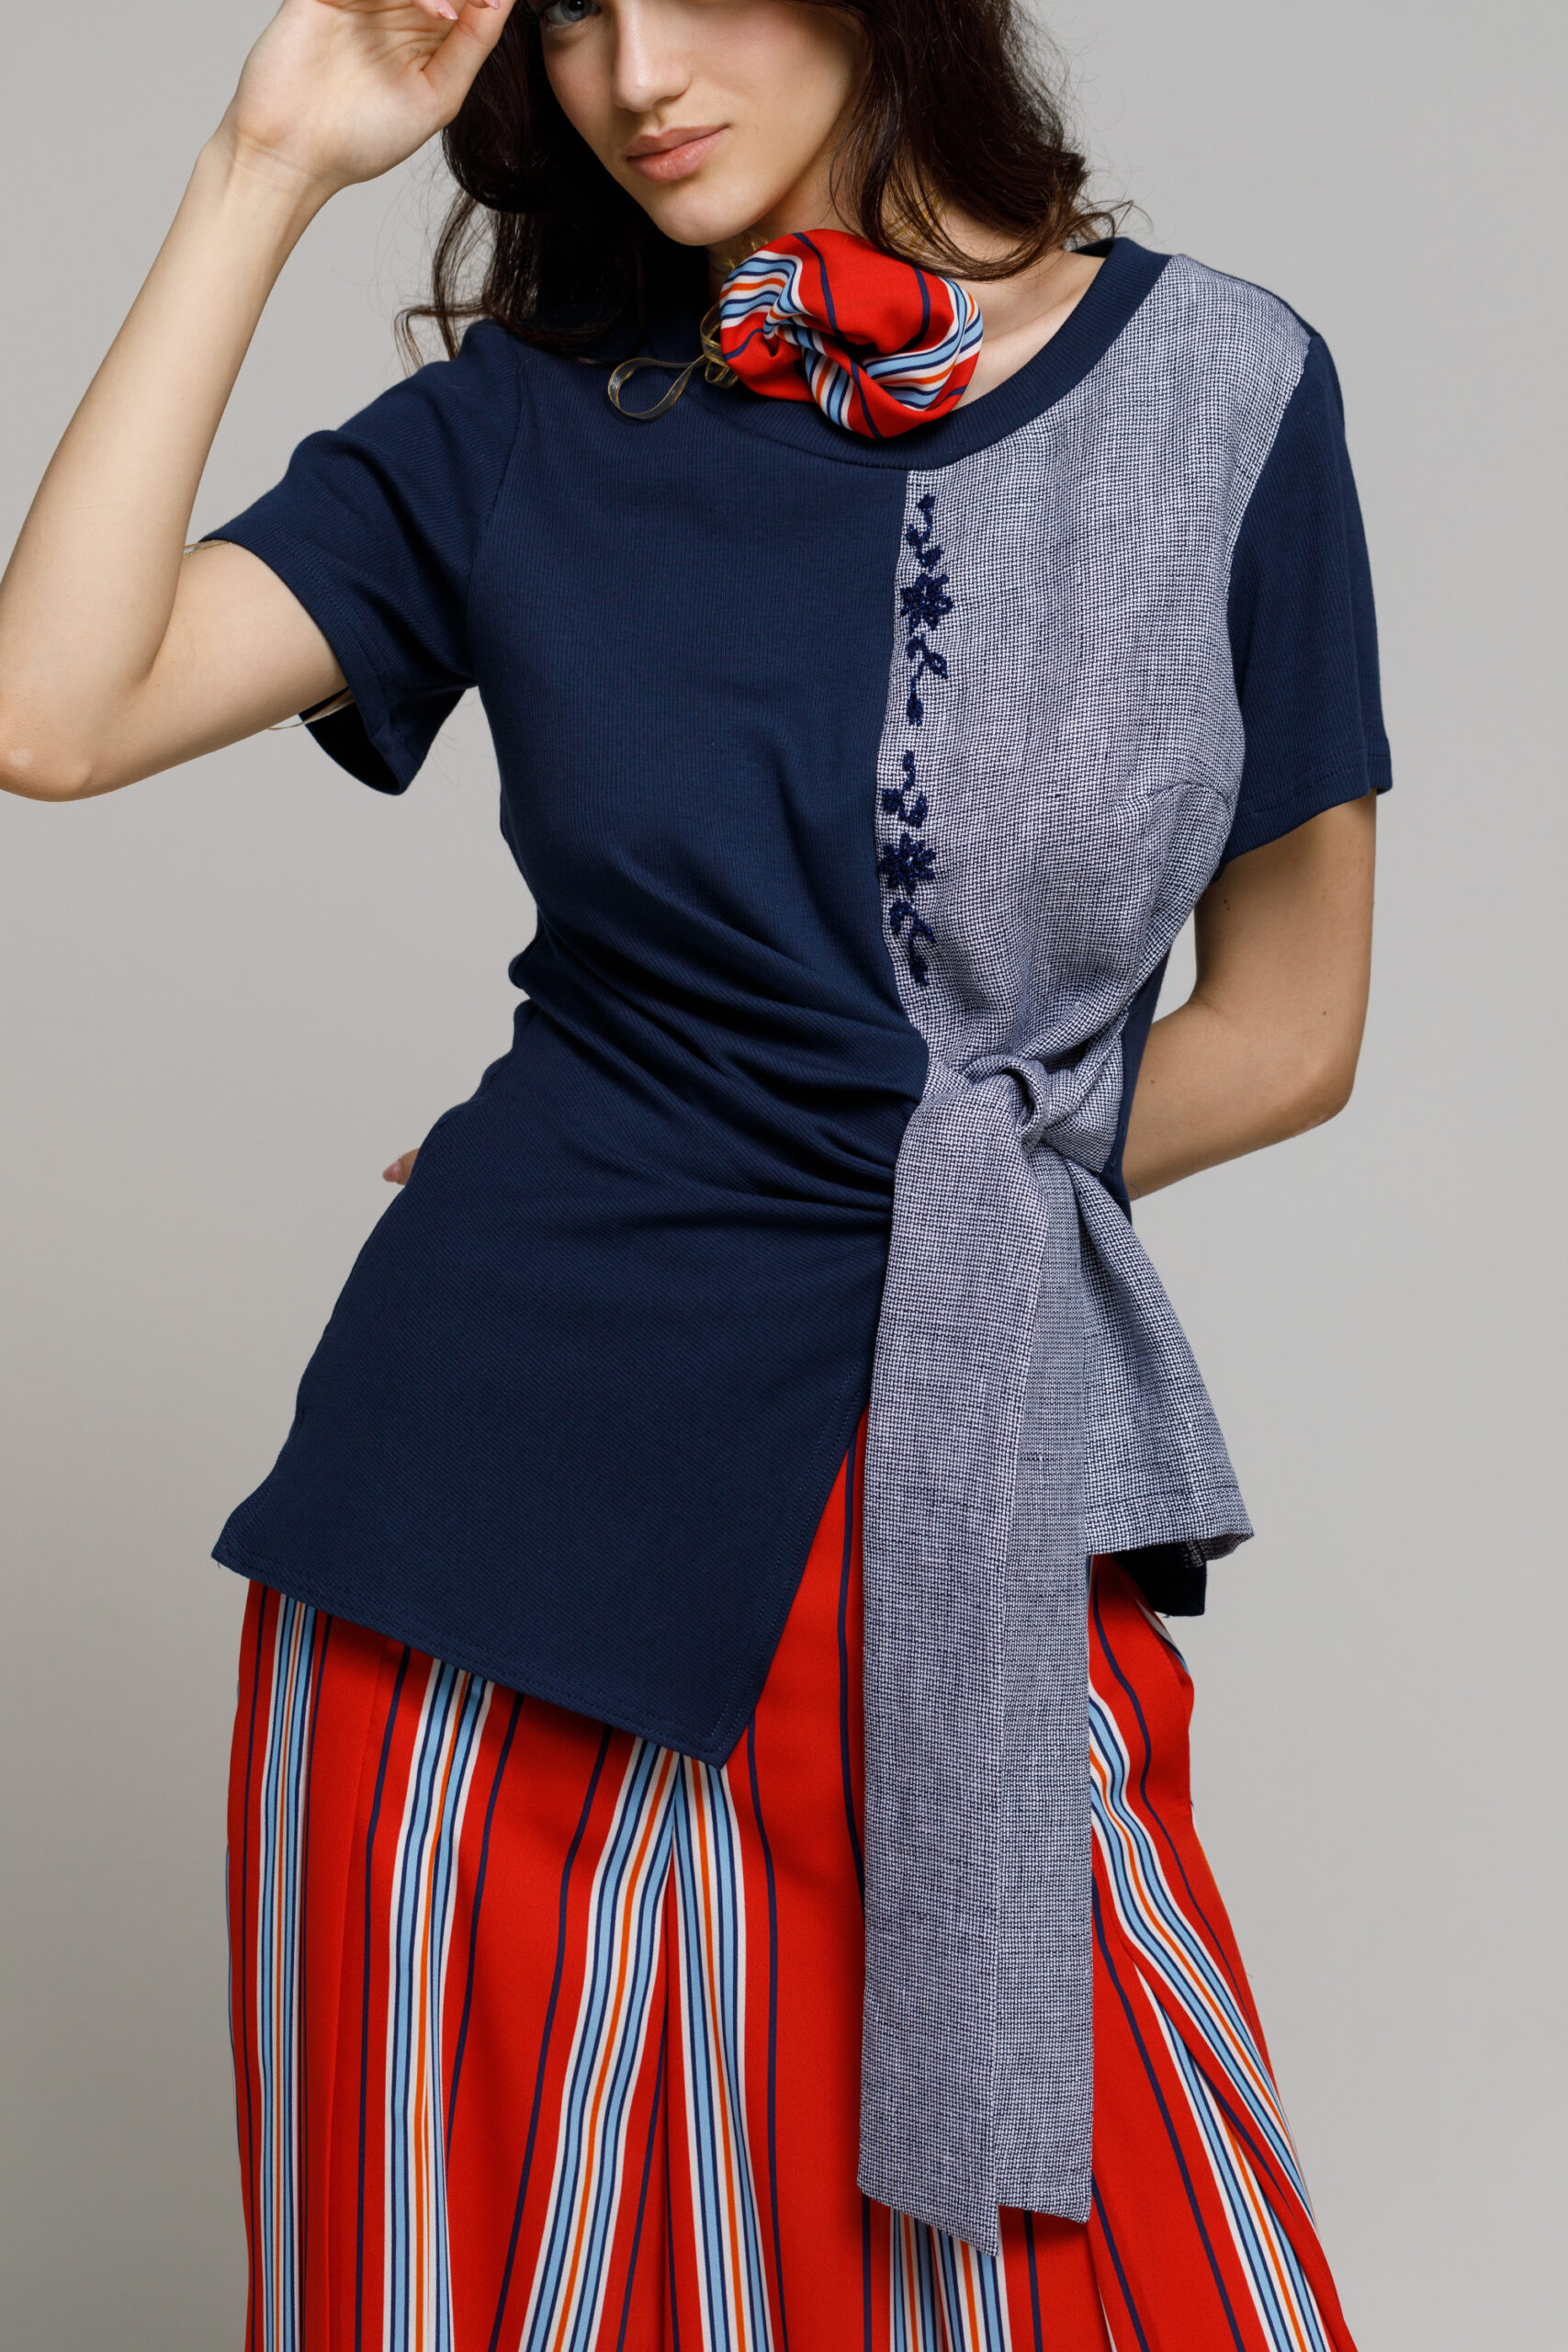 Bluza PAX bleumarin cu cordon si broderie. Materiale naturale, design unicat, cu broderie si aplicatii handmade